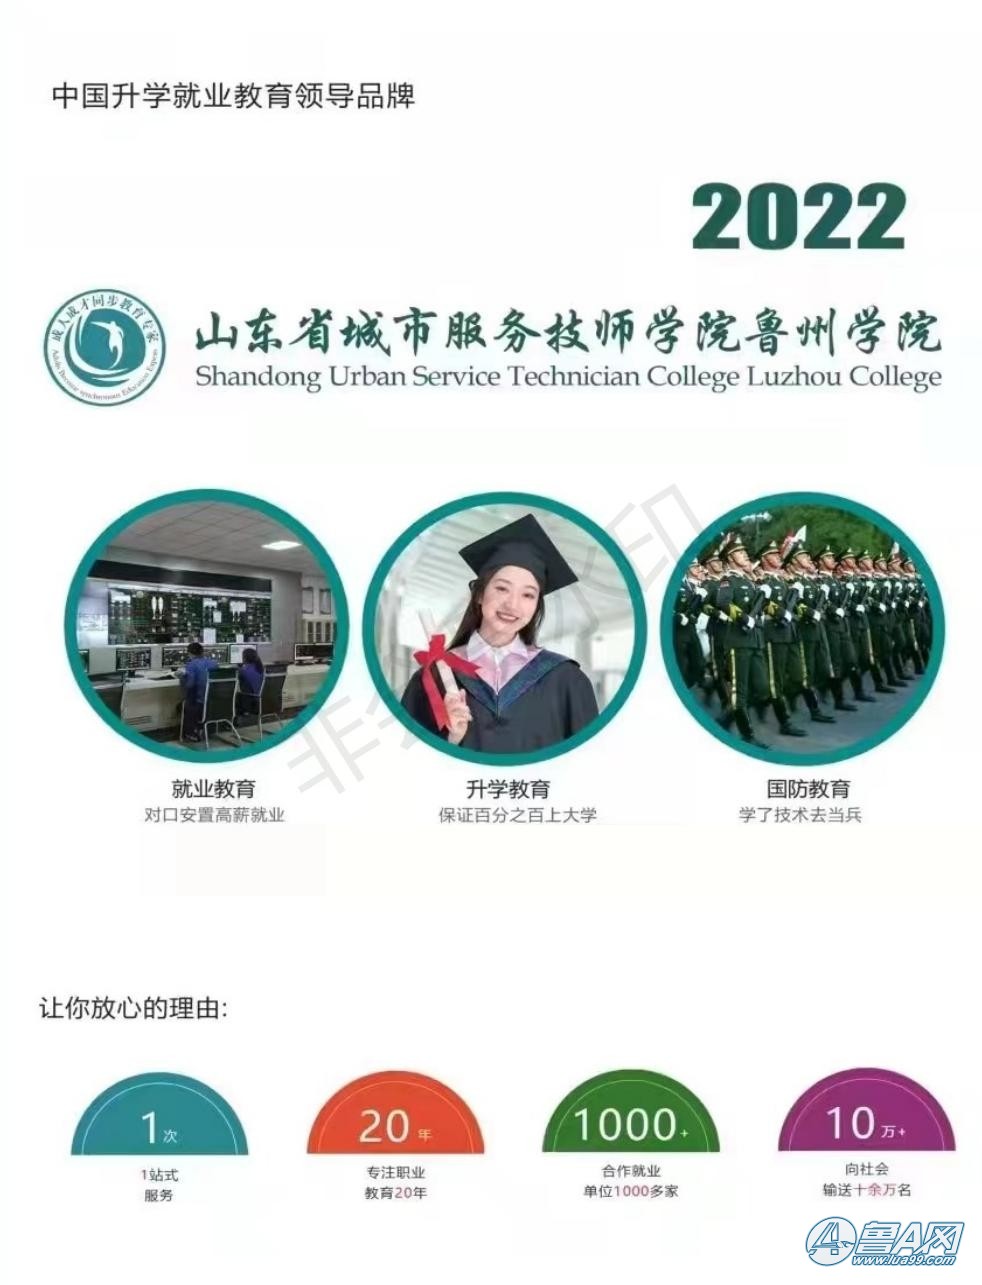 山东城市服务技师学院鲁州学院2022年招生简章_01.jpg